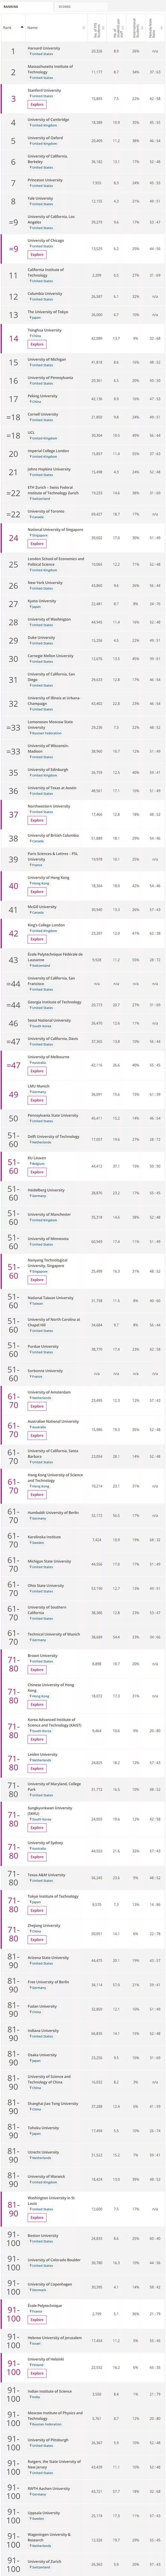 2018泰晤士世界大学声誉排名完整榜单